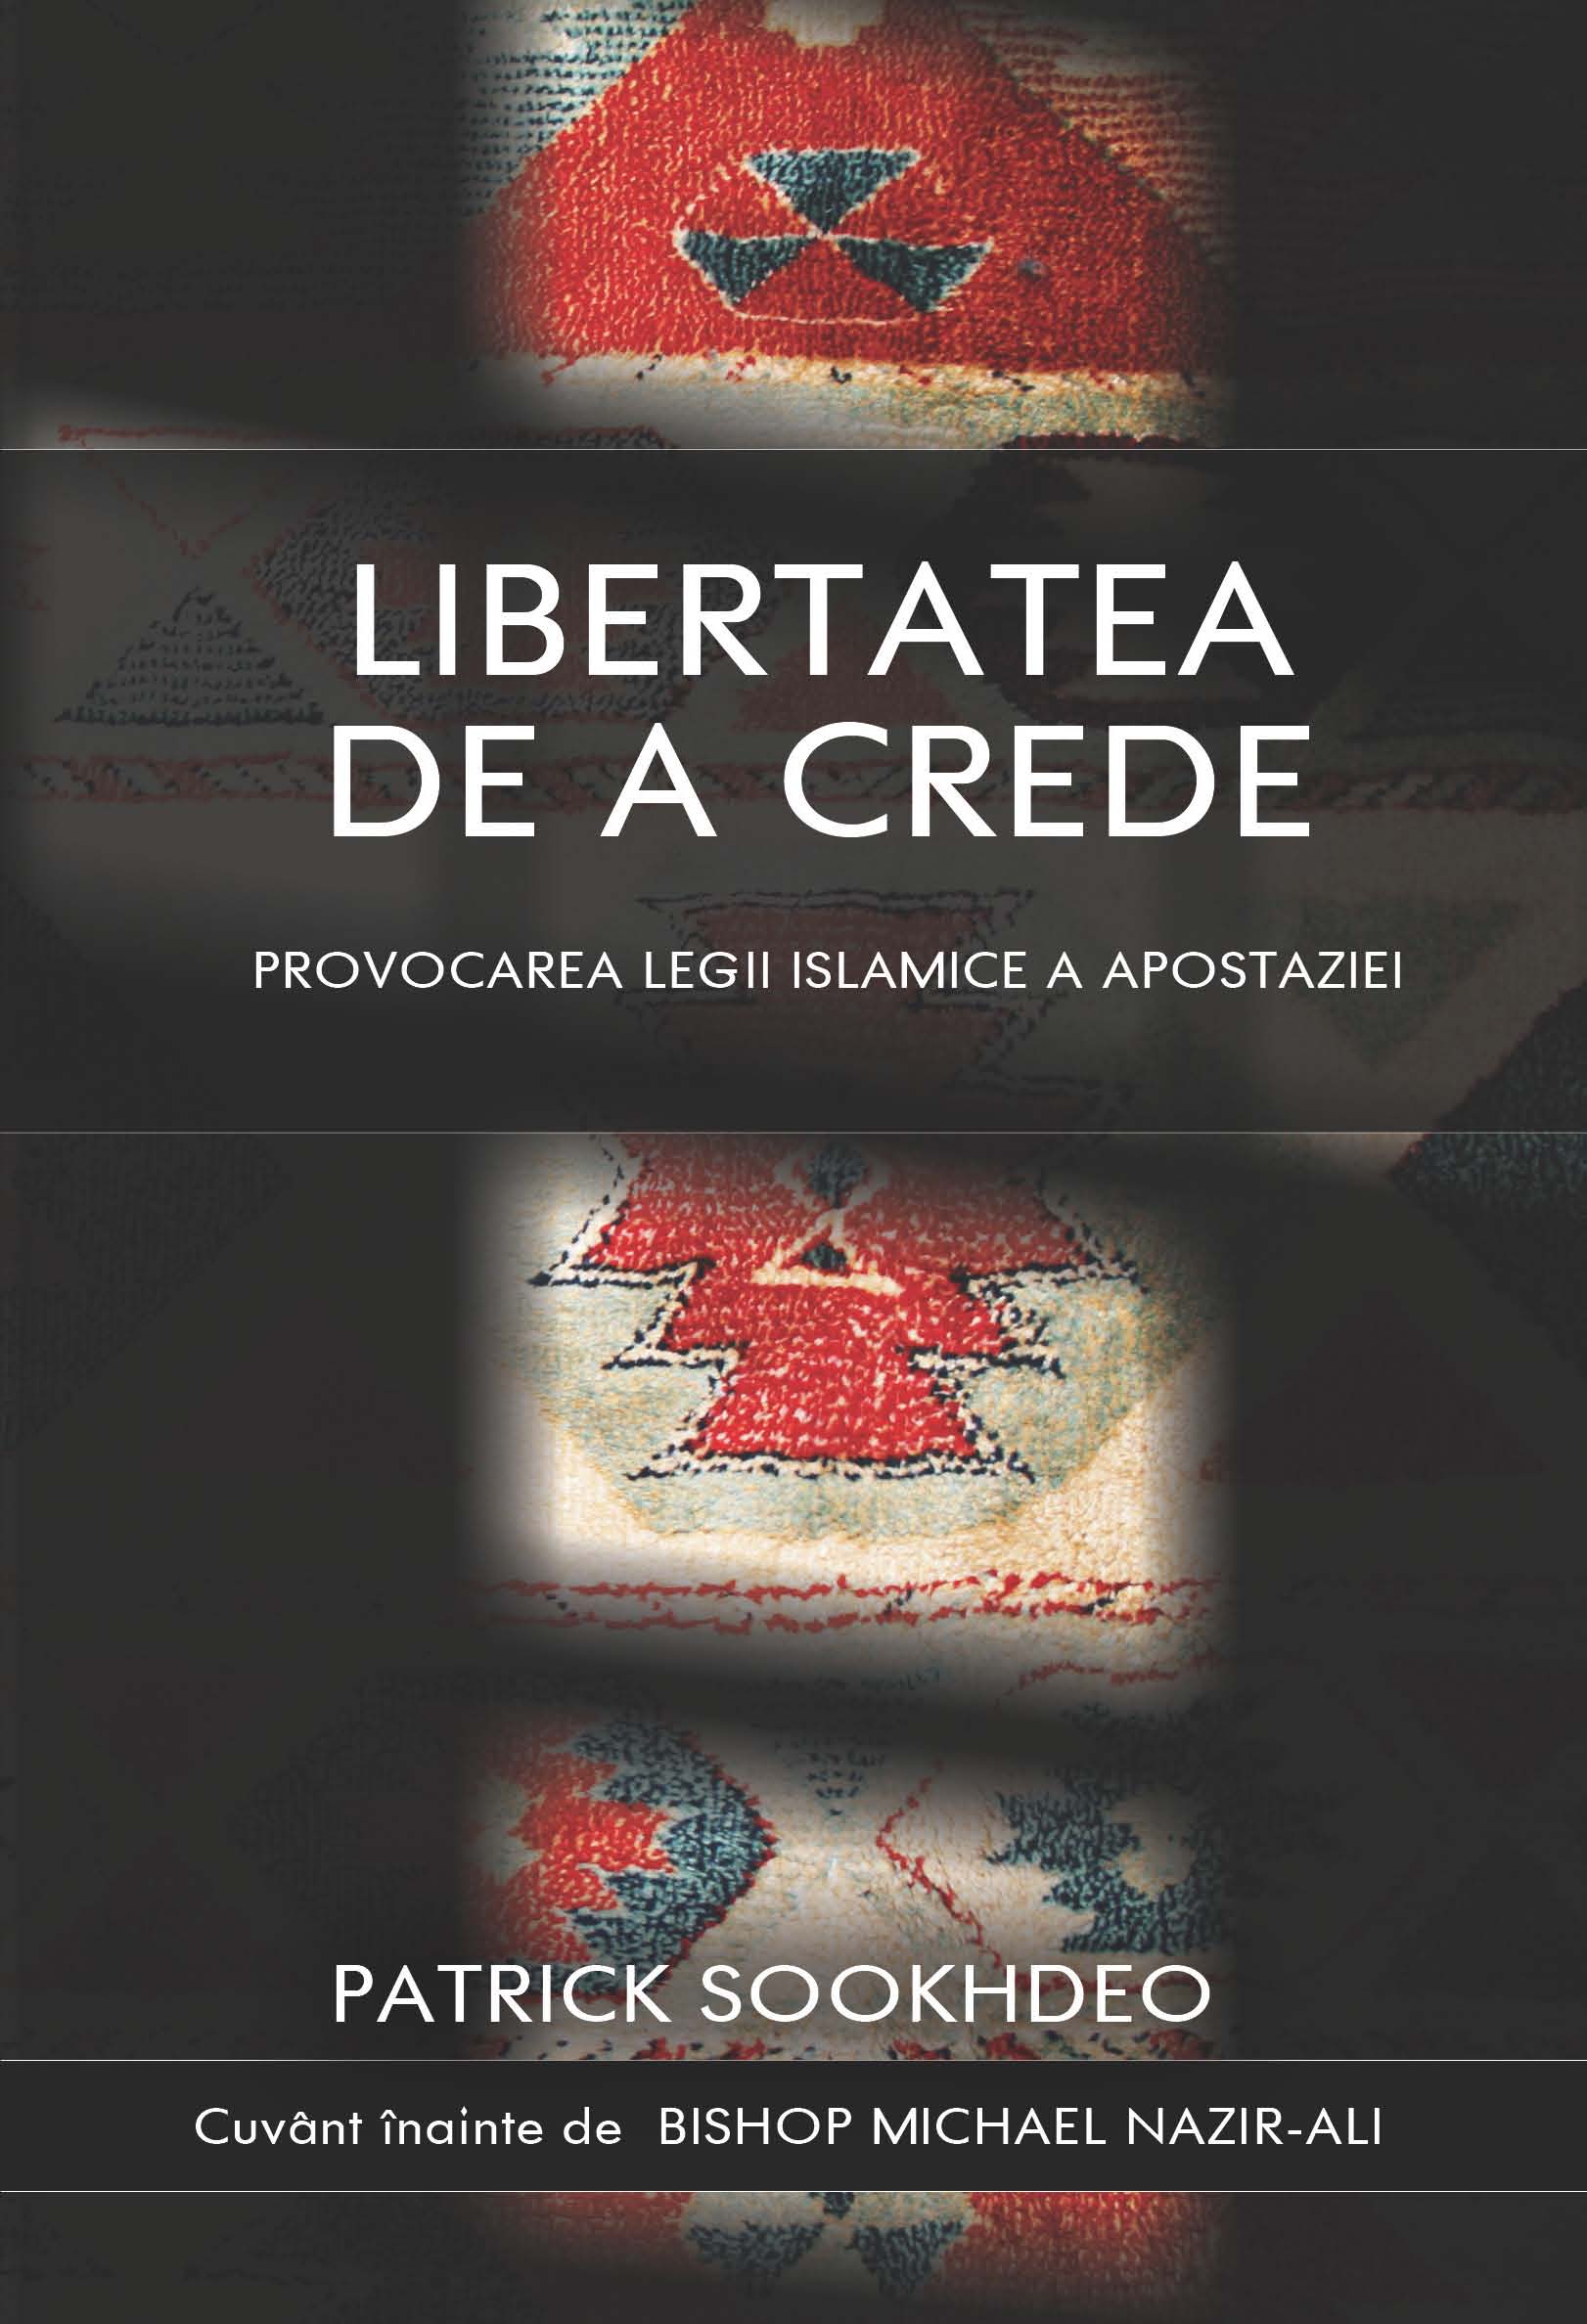 LIBERTATEA DE A CREDE - Provocarea legii islamice a apostaziei